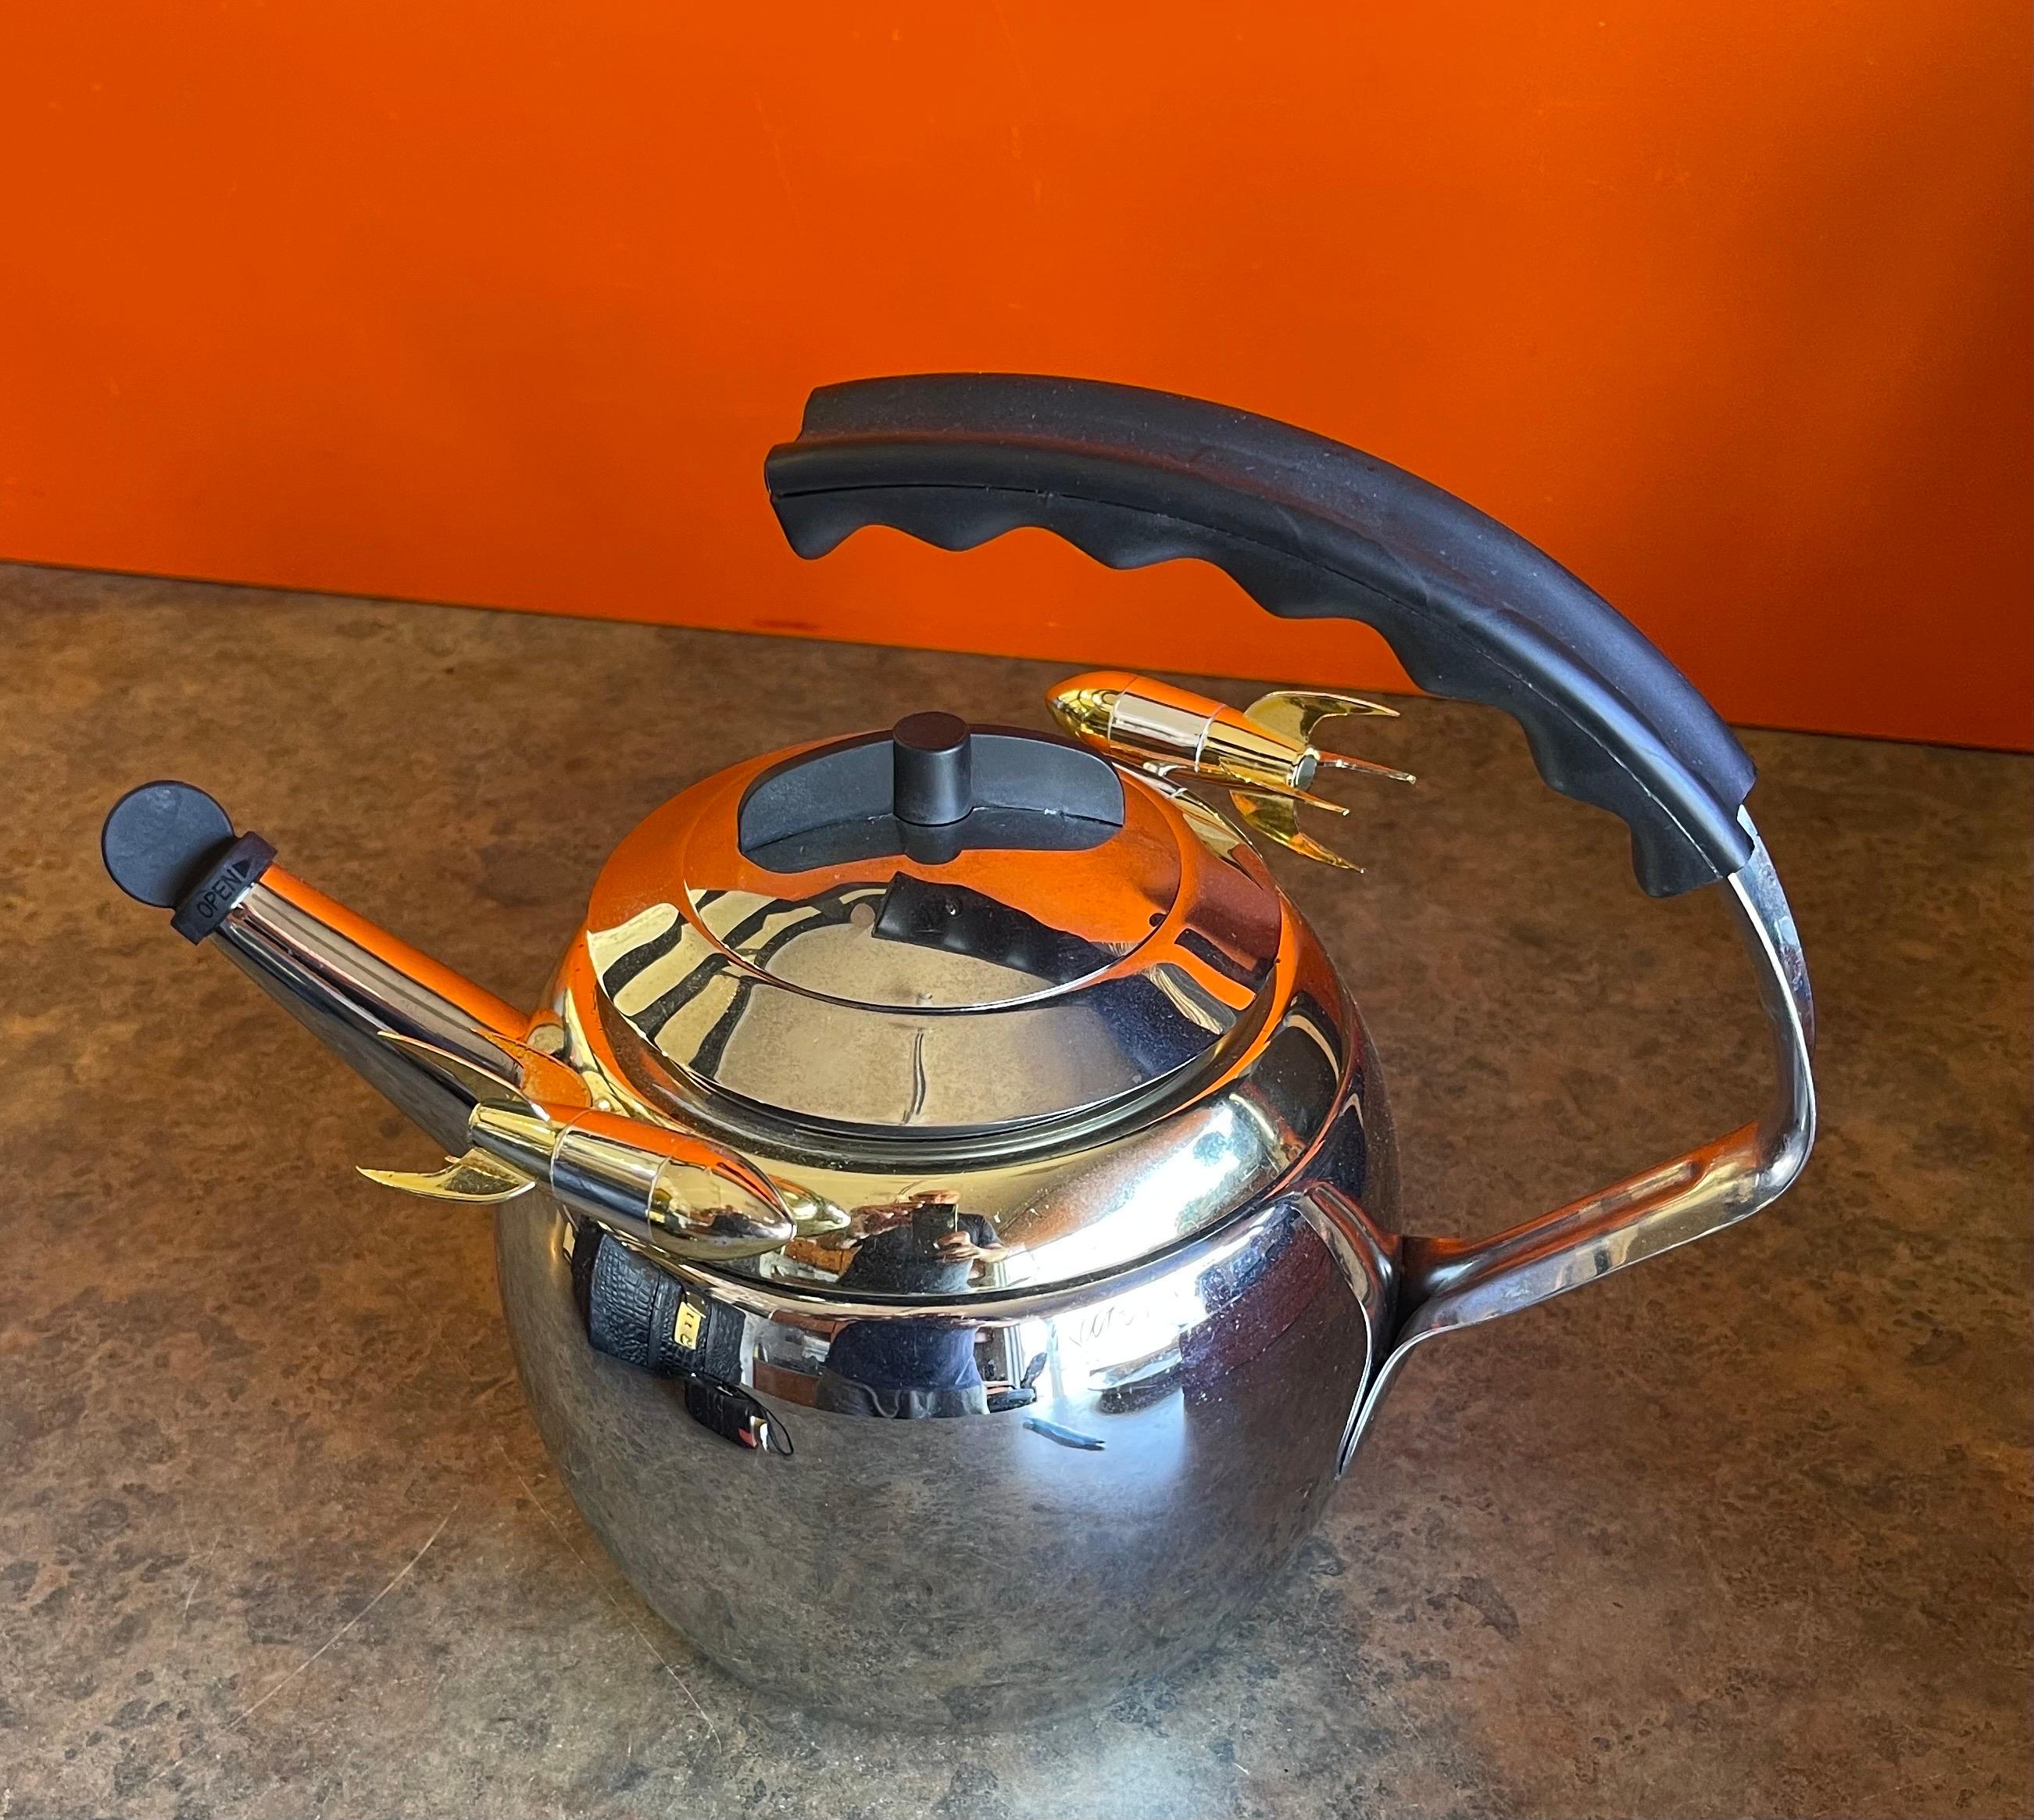 kamenstein rocket tea kettle for sale